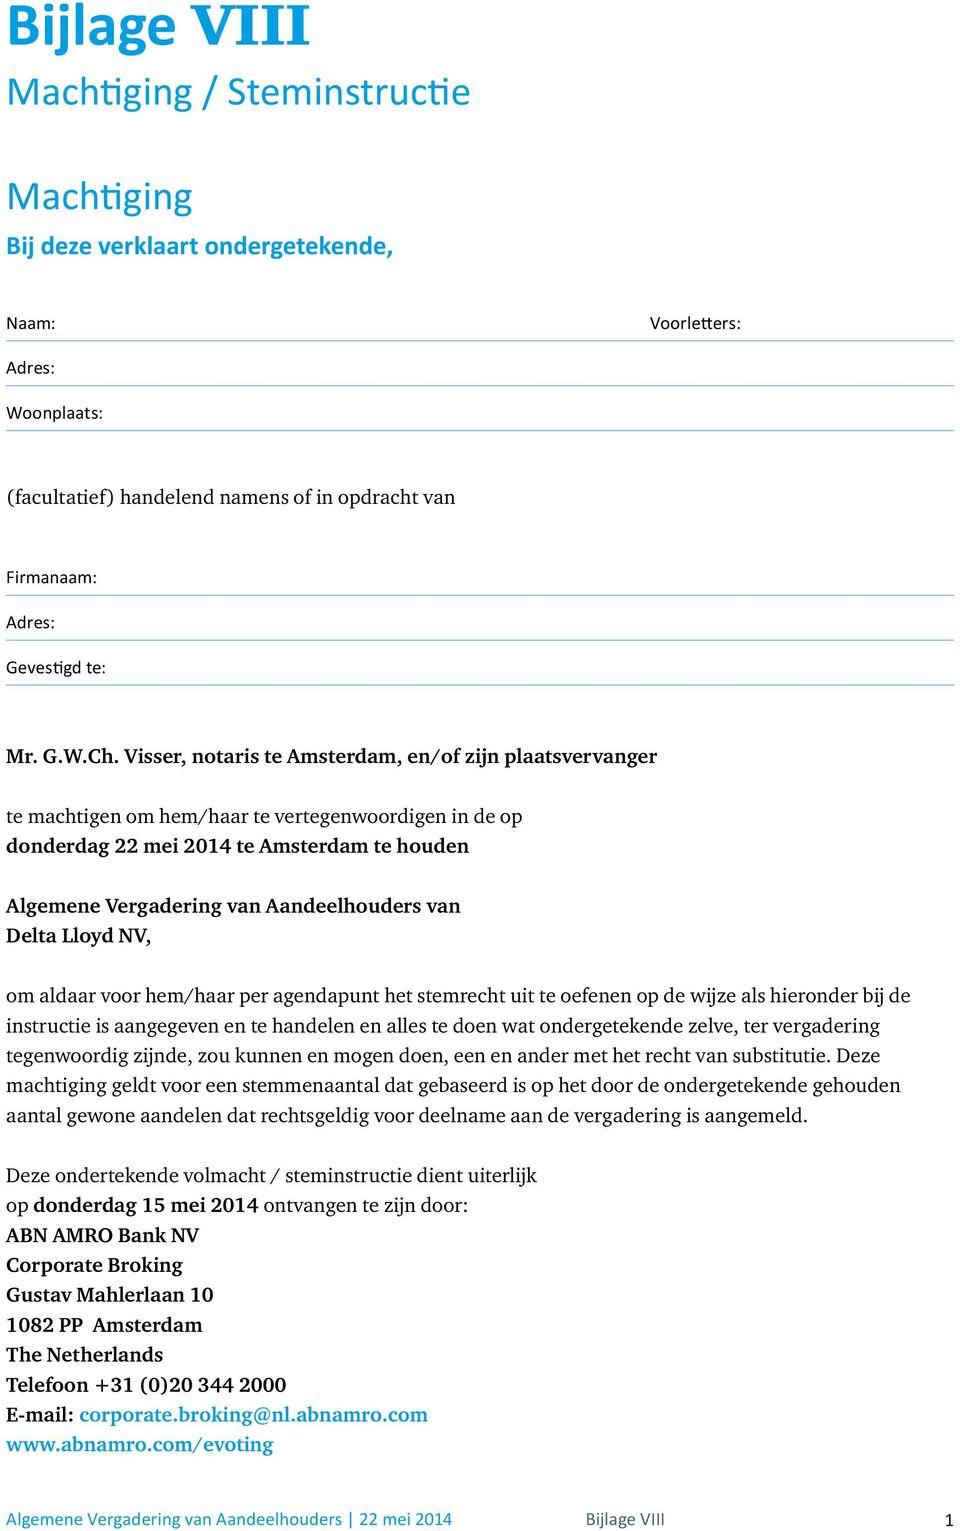 Visser, notaris te Amsterdam, en/of zijn plaatsvervanger te machtigen om hem/haar te vertegenwoordigen in de op donderdag 22 mei 2014 te Amsterdam te houden Algemene Vergadering van Aandeelhouders